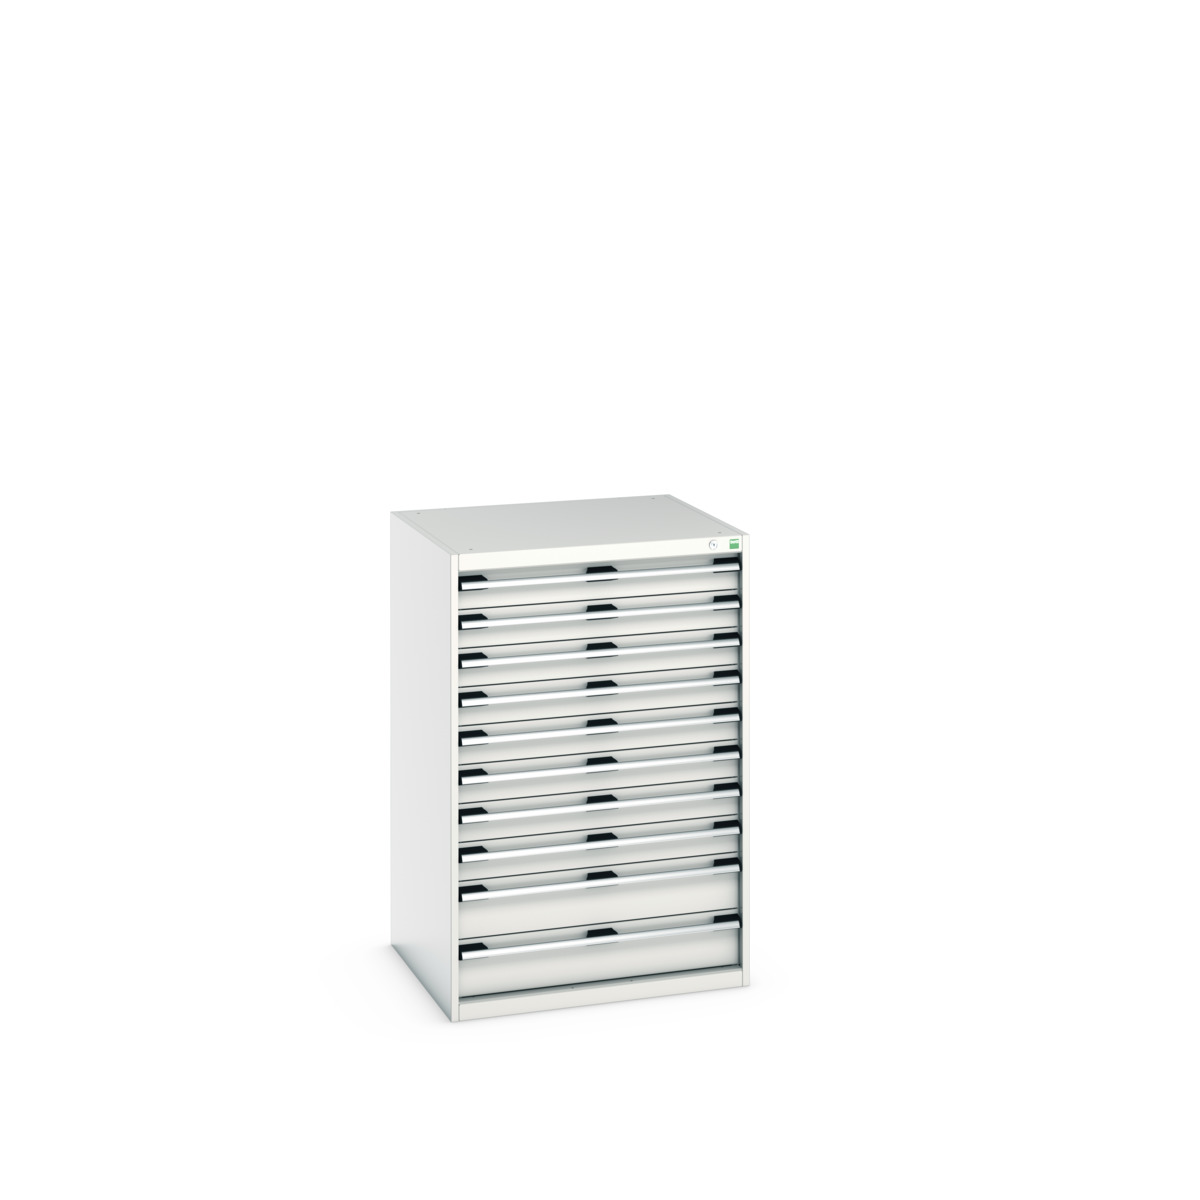 40028038.16V - cubio drawer cabinet